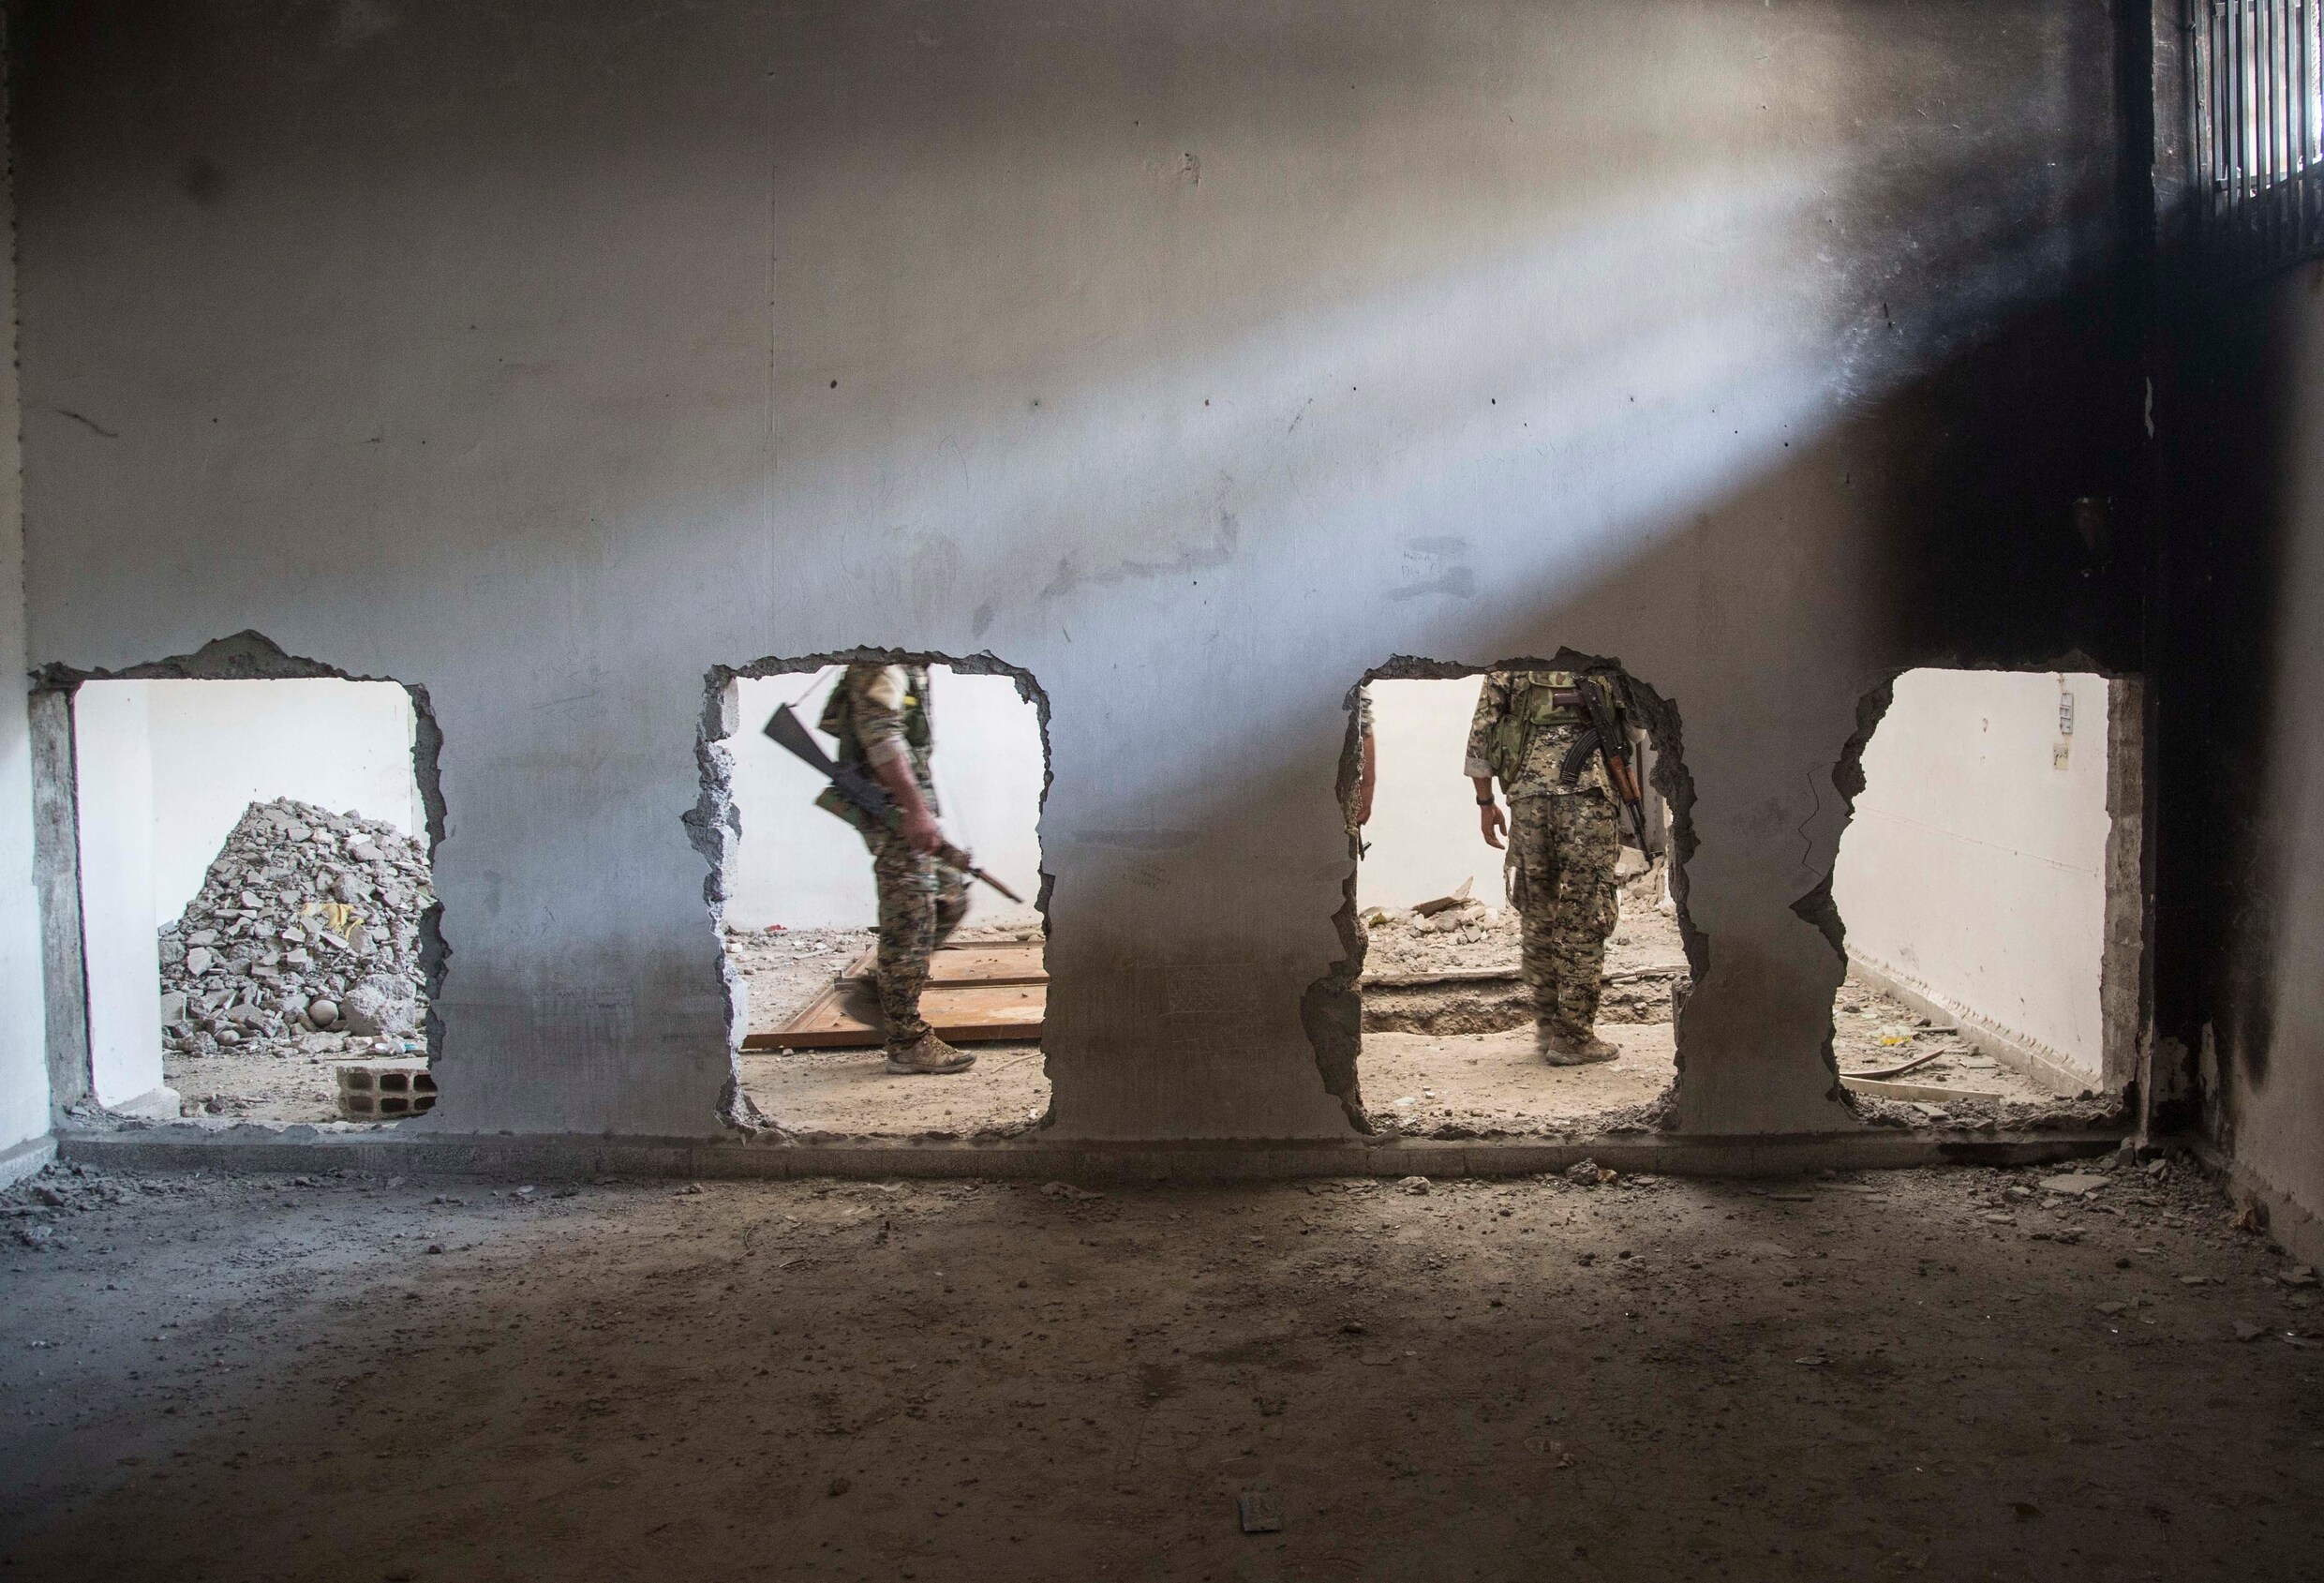 Binnenkijken in de cellen van IS-gevangenis in Raqqa: "Nachtmerrie"